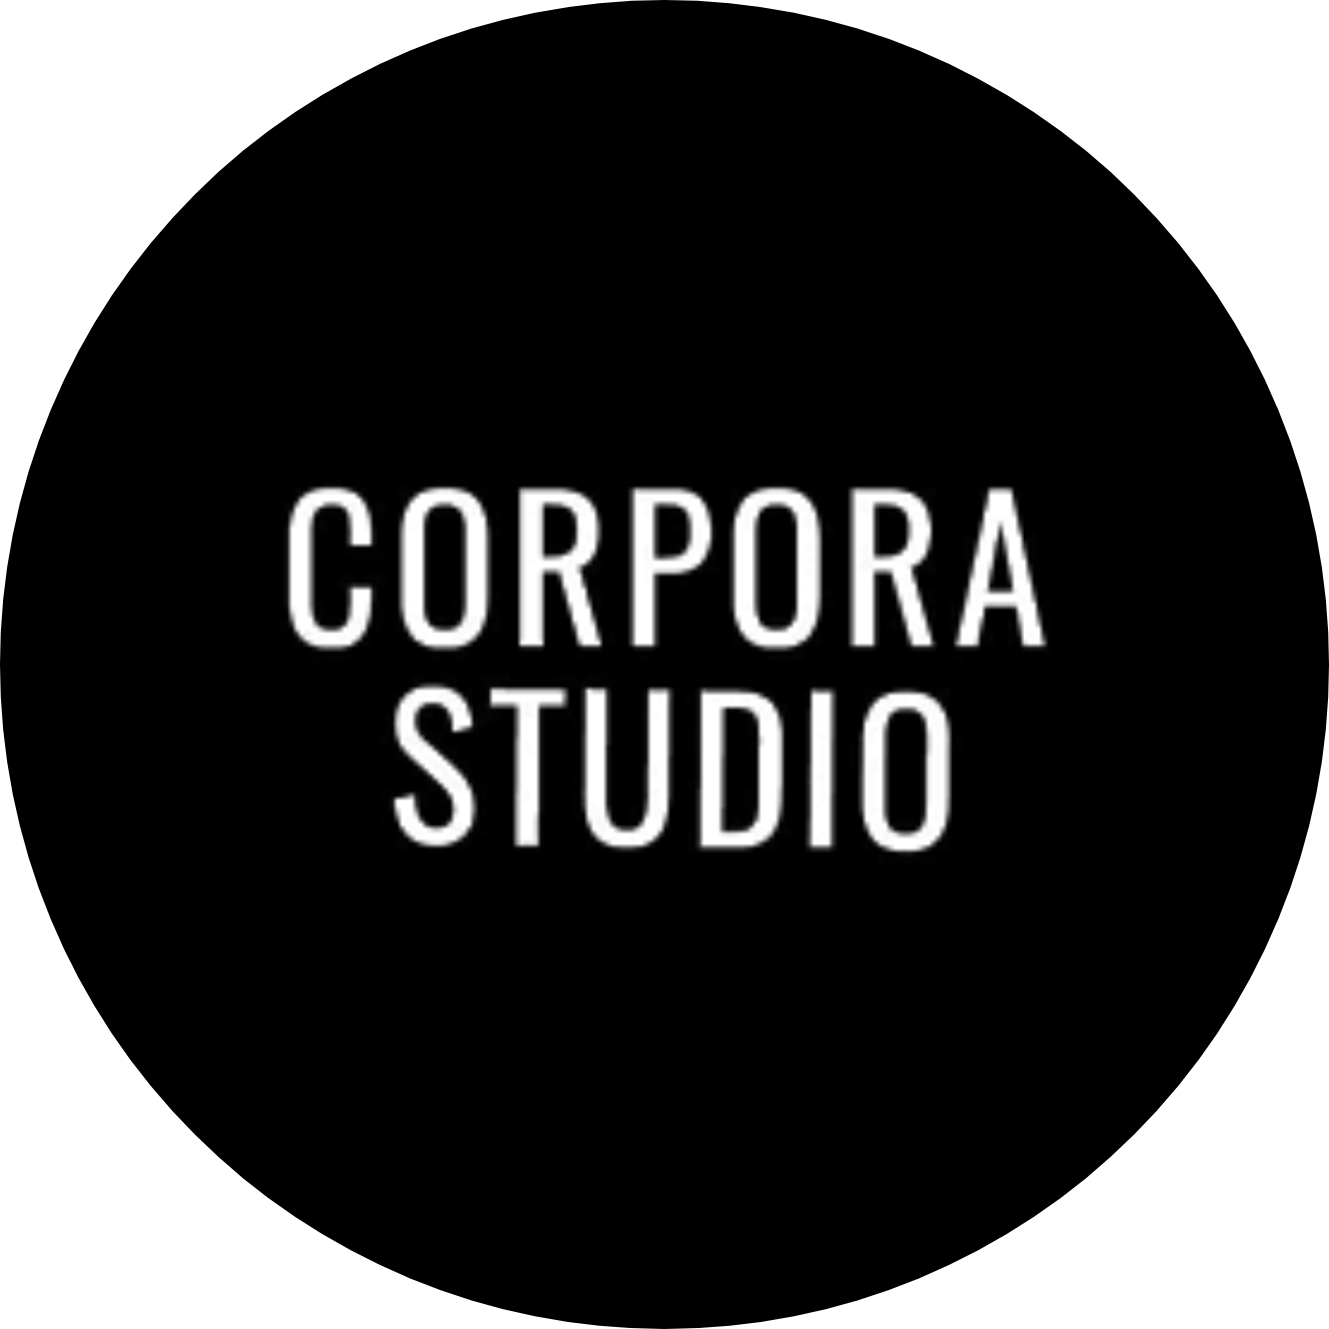 Corpora Studio